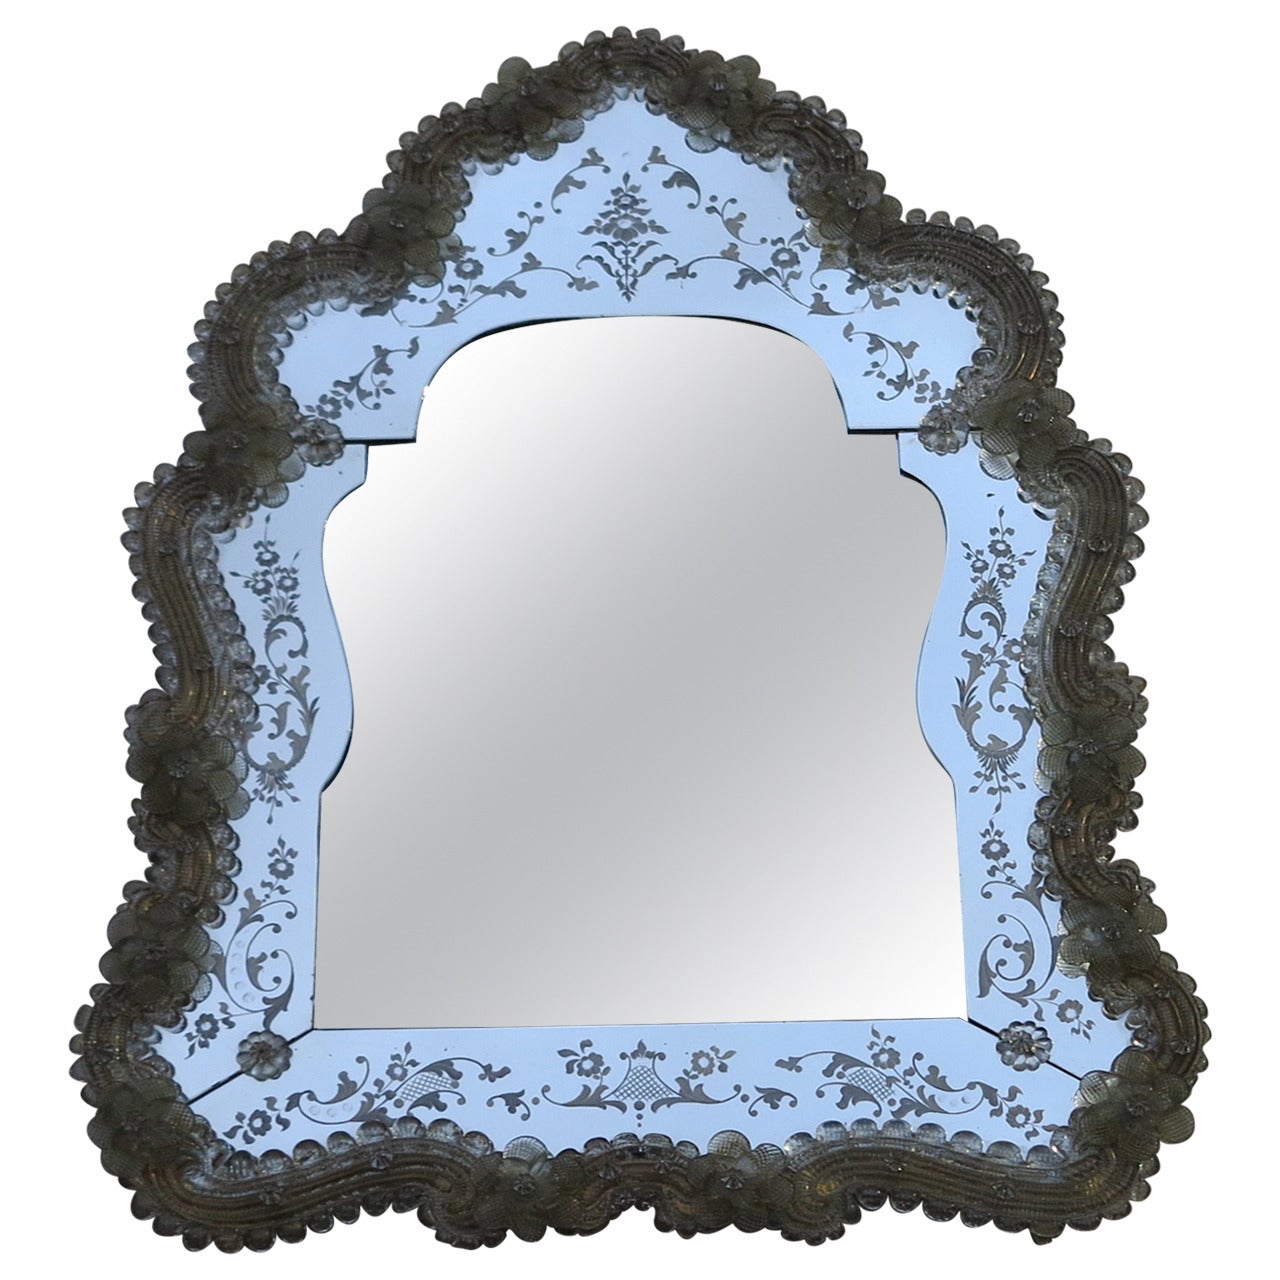 Veroneser Wappenspiegel mit abgeschrägtem Spiegel in der Mitte